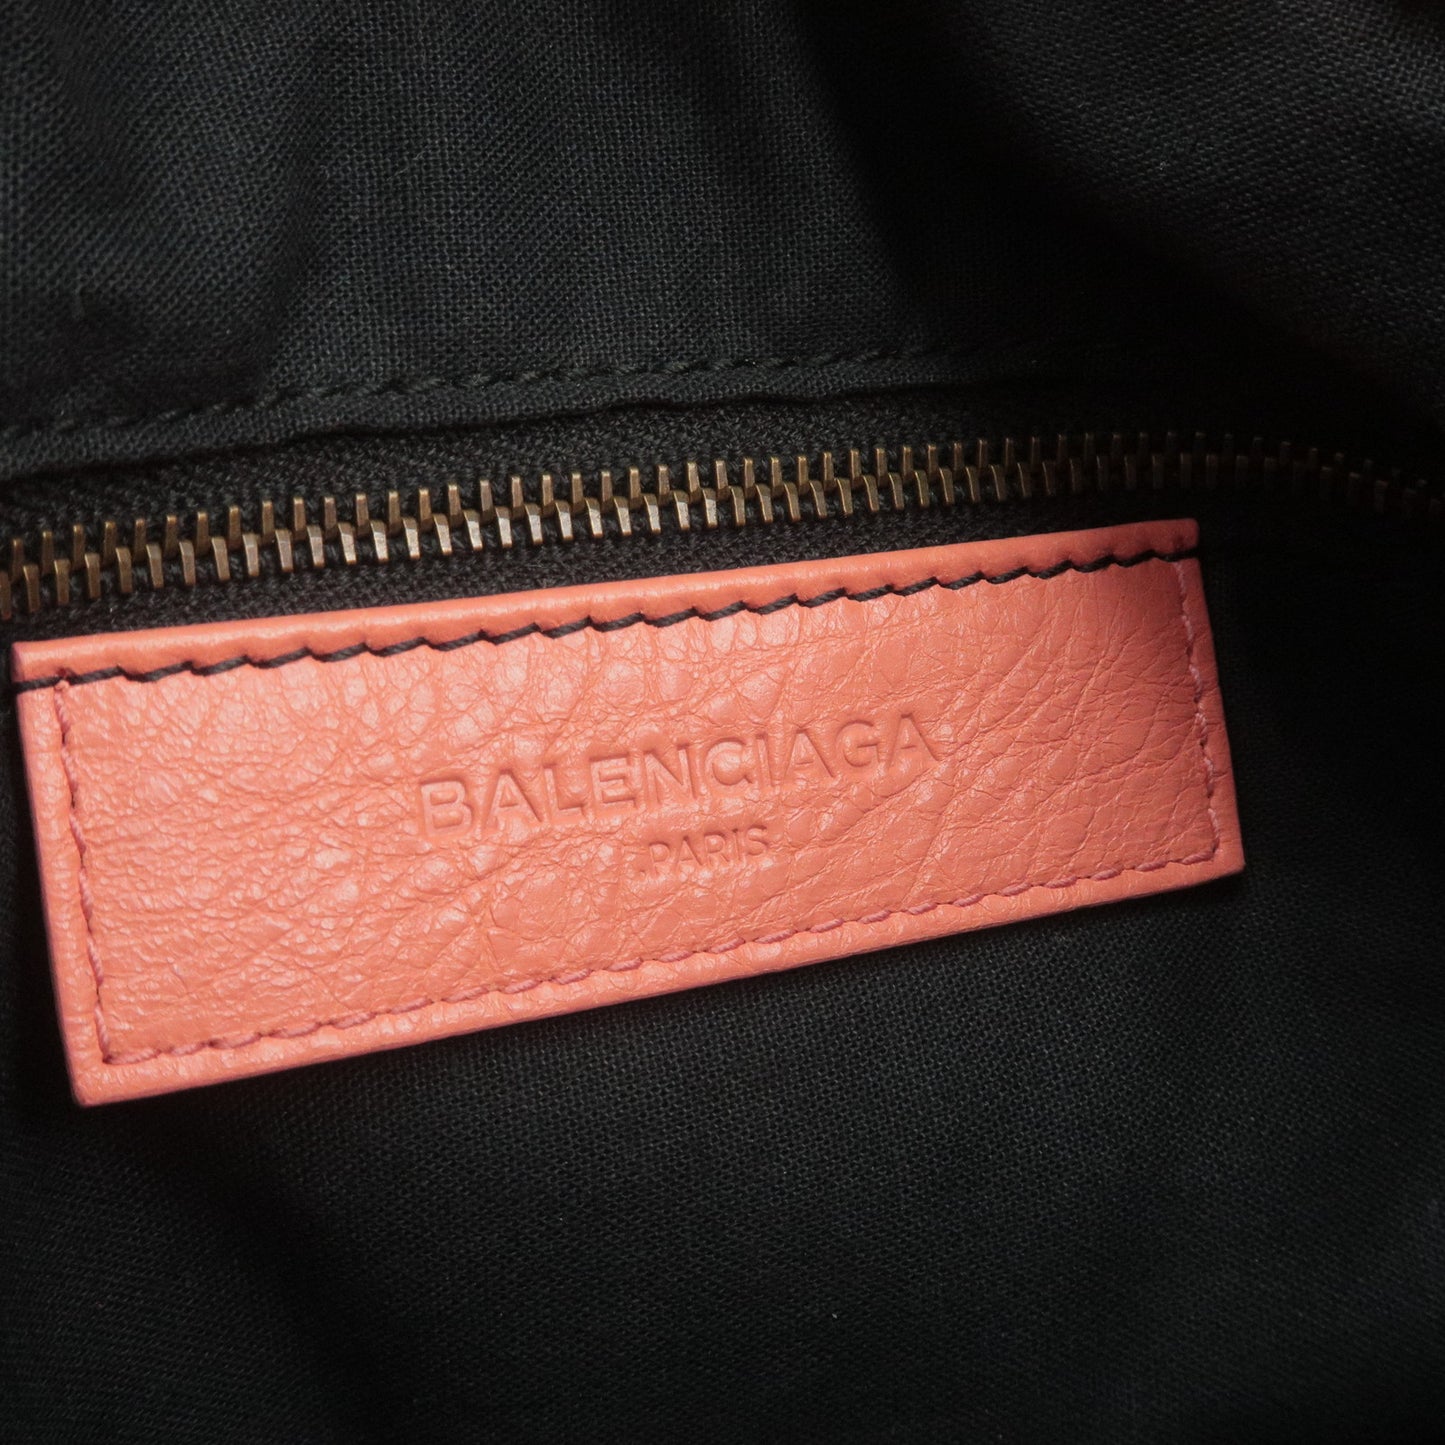 BALENCIAGA The Town Leather 2way Bag Hand Bag Salmon Pink 240579